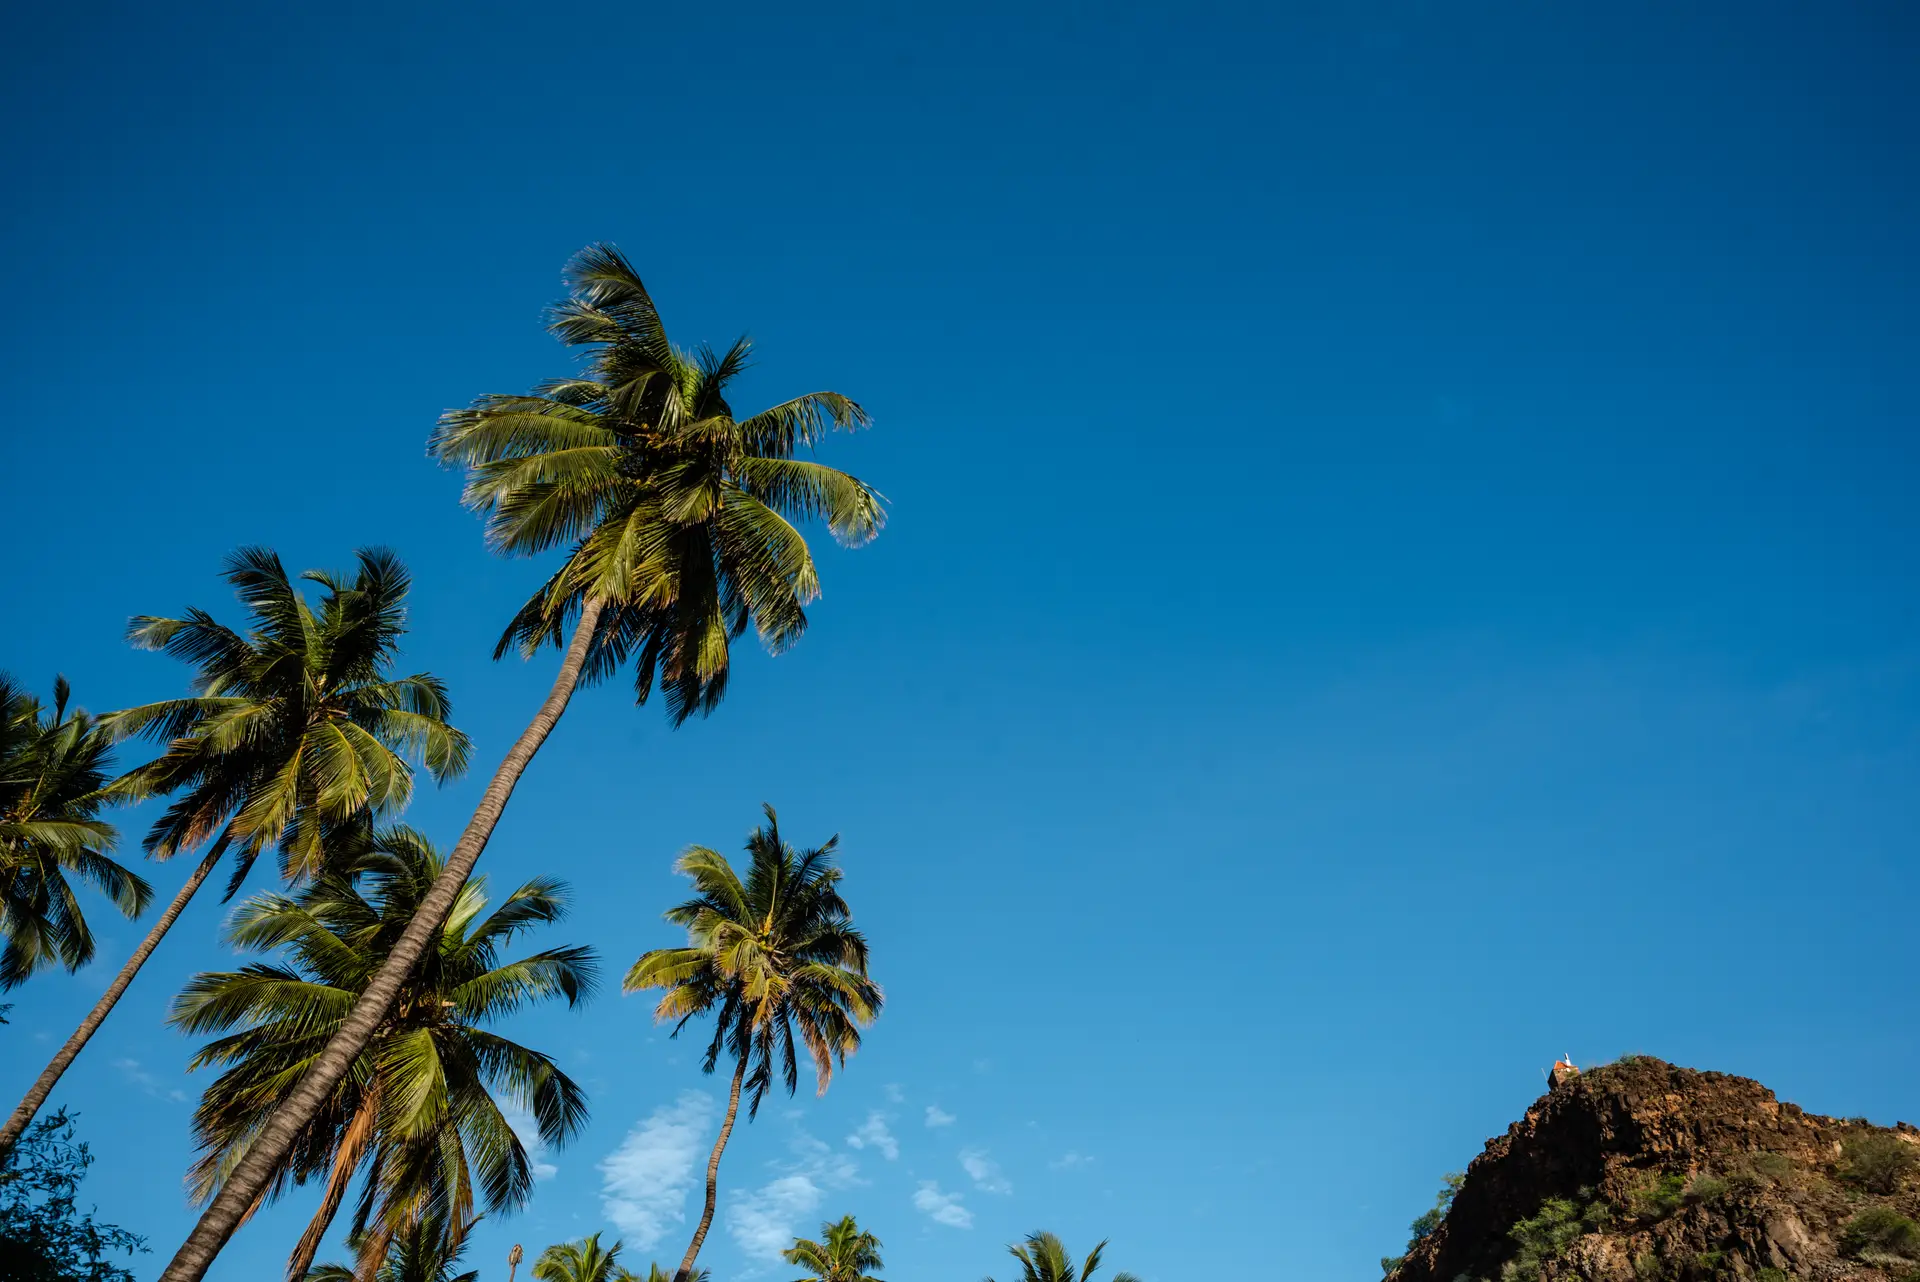 Na Cidade Velha, as palmeiras sobem alto na paisagem. Ali a aridez do solo é substituída por apontamentos mais verdes. A razão está num riacho que ali desagua